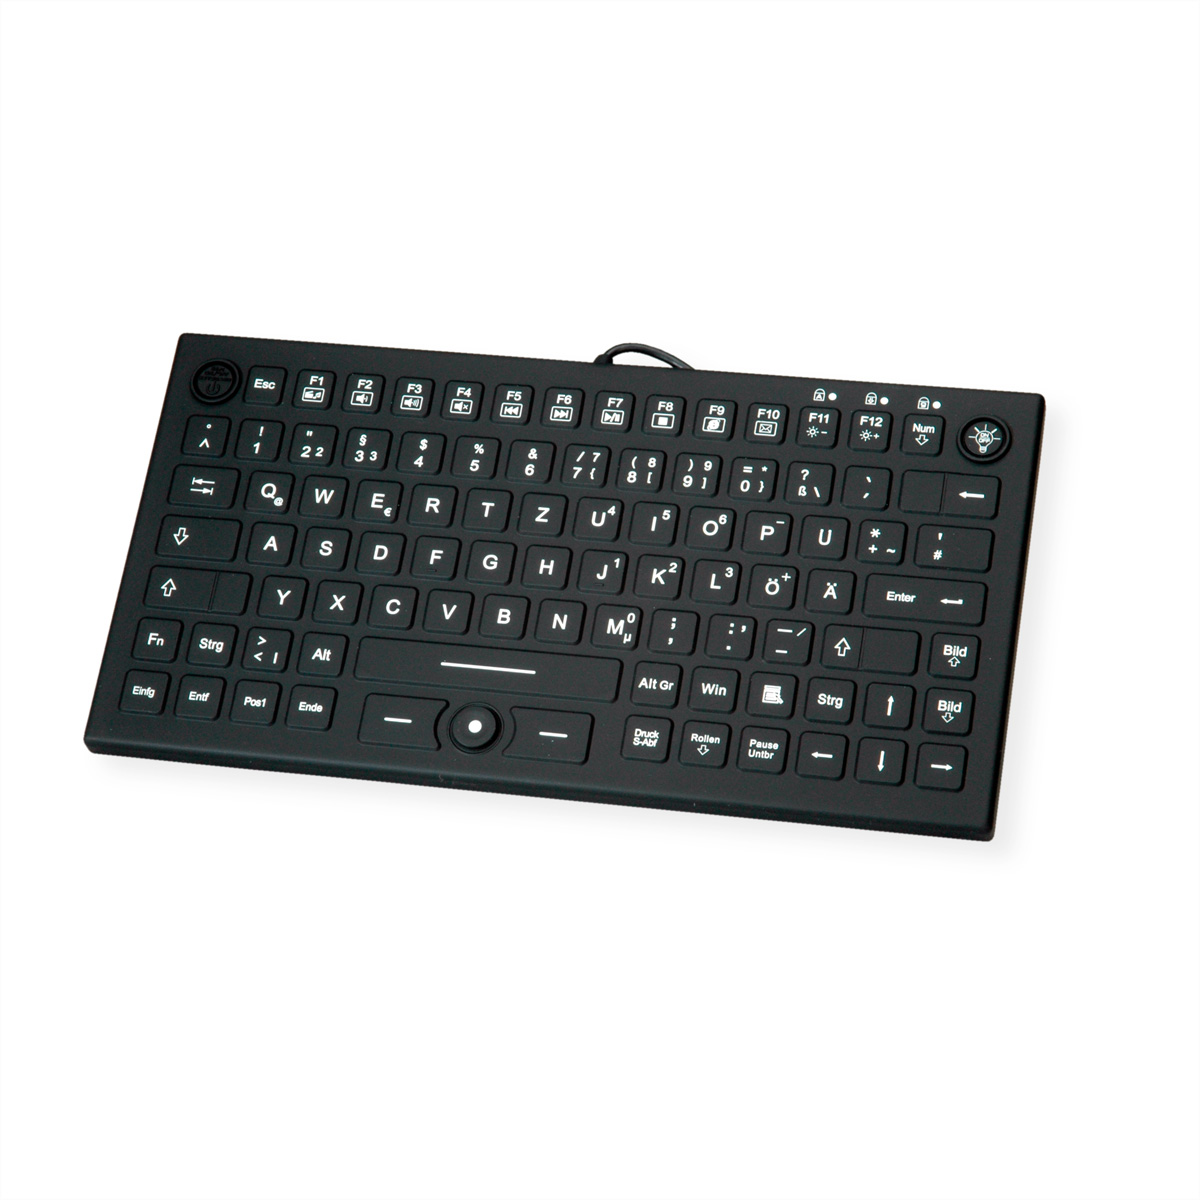 KeySonic KSK-5232IN Industrie Tastatur mit Trackpoint wasserdicht IP68 USB